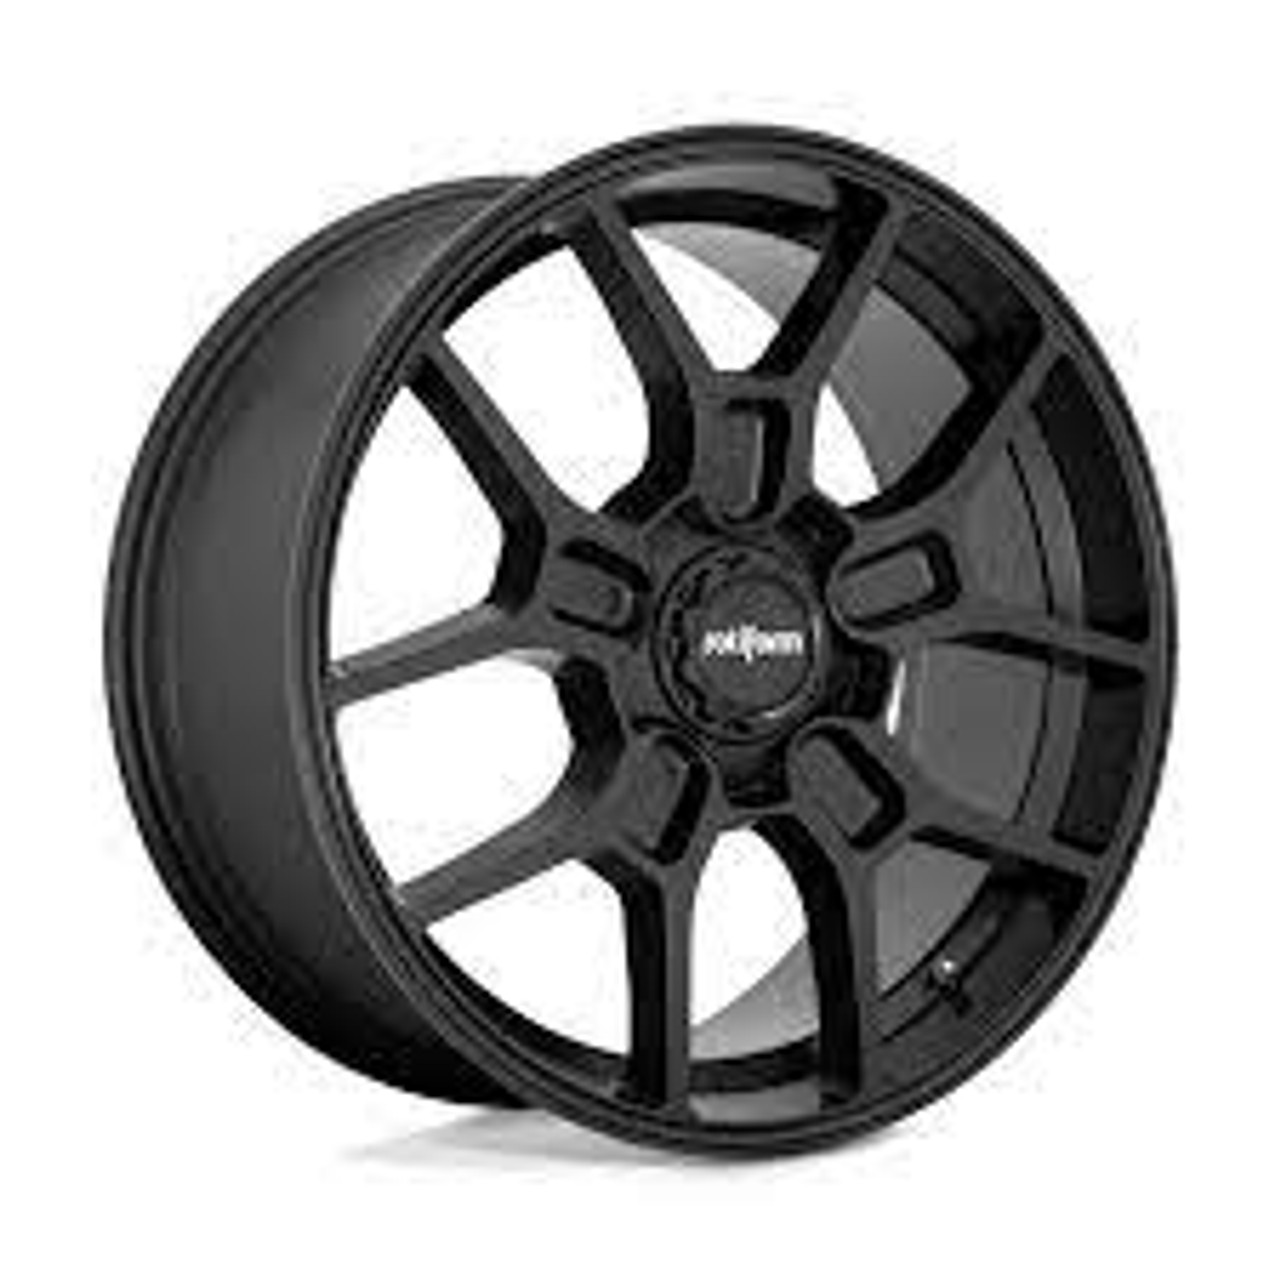 Rotiform R177 ZMO Wheel 19x8.5 5x114.3 35 Offset - Matte Black